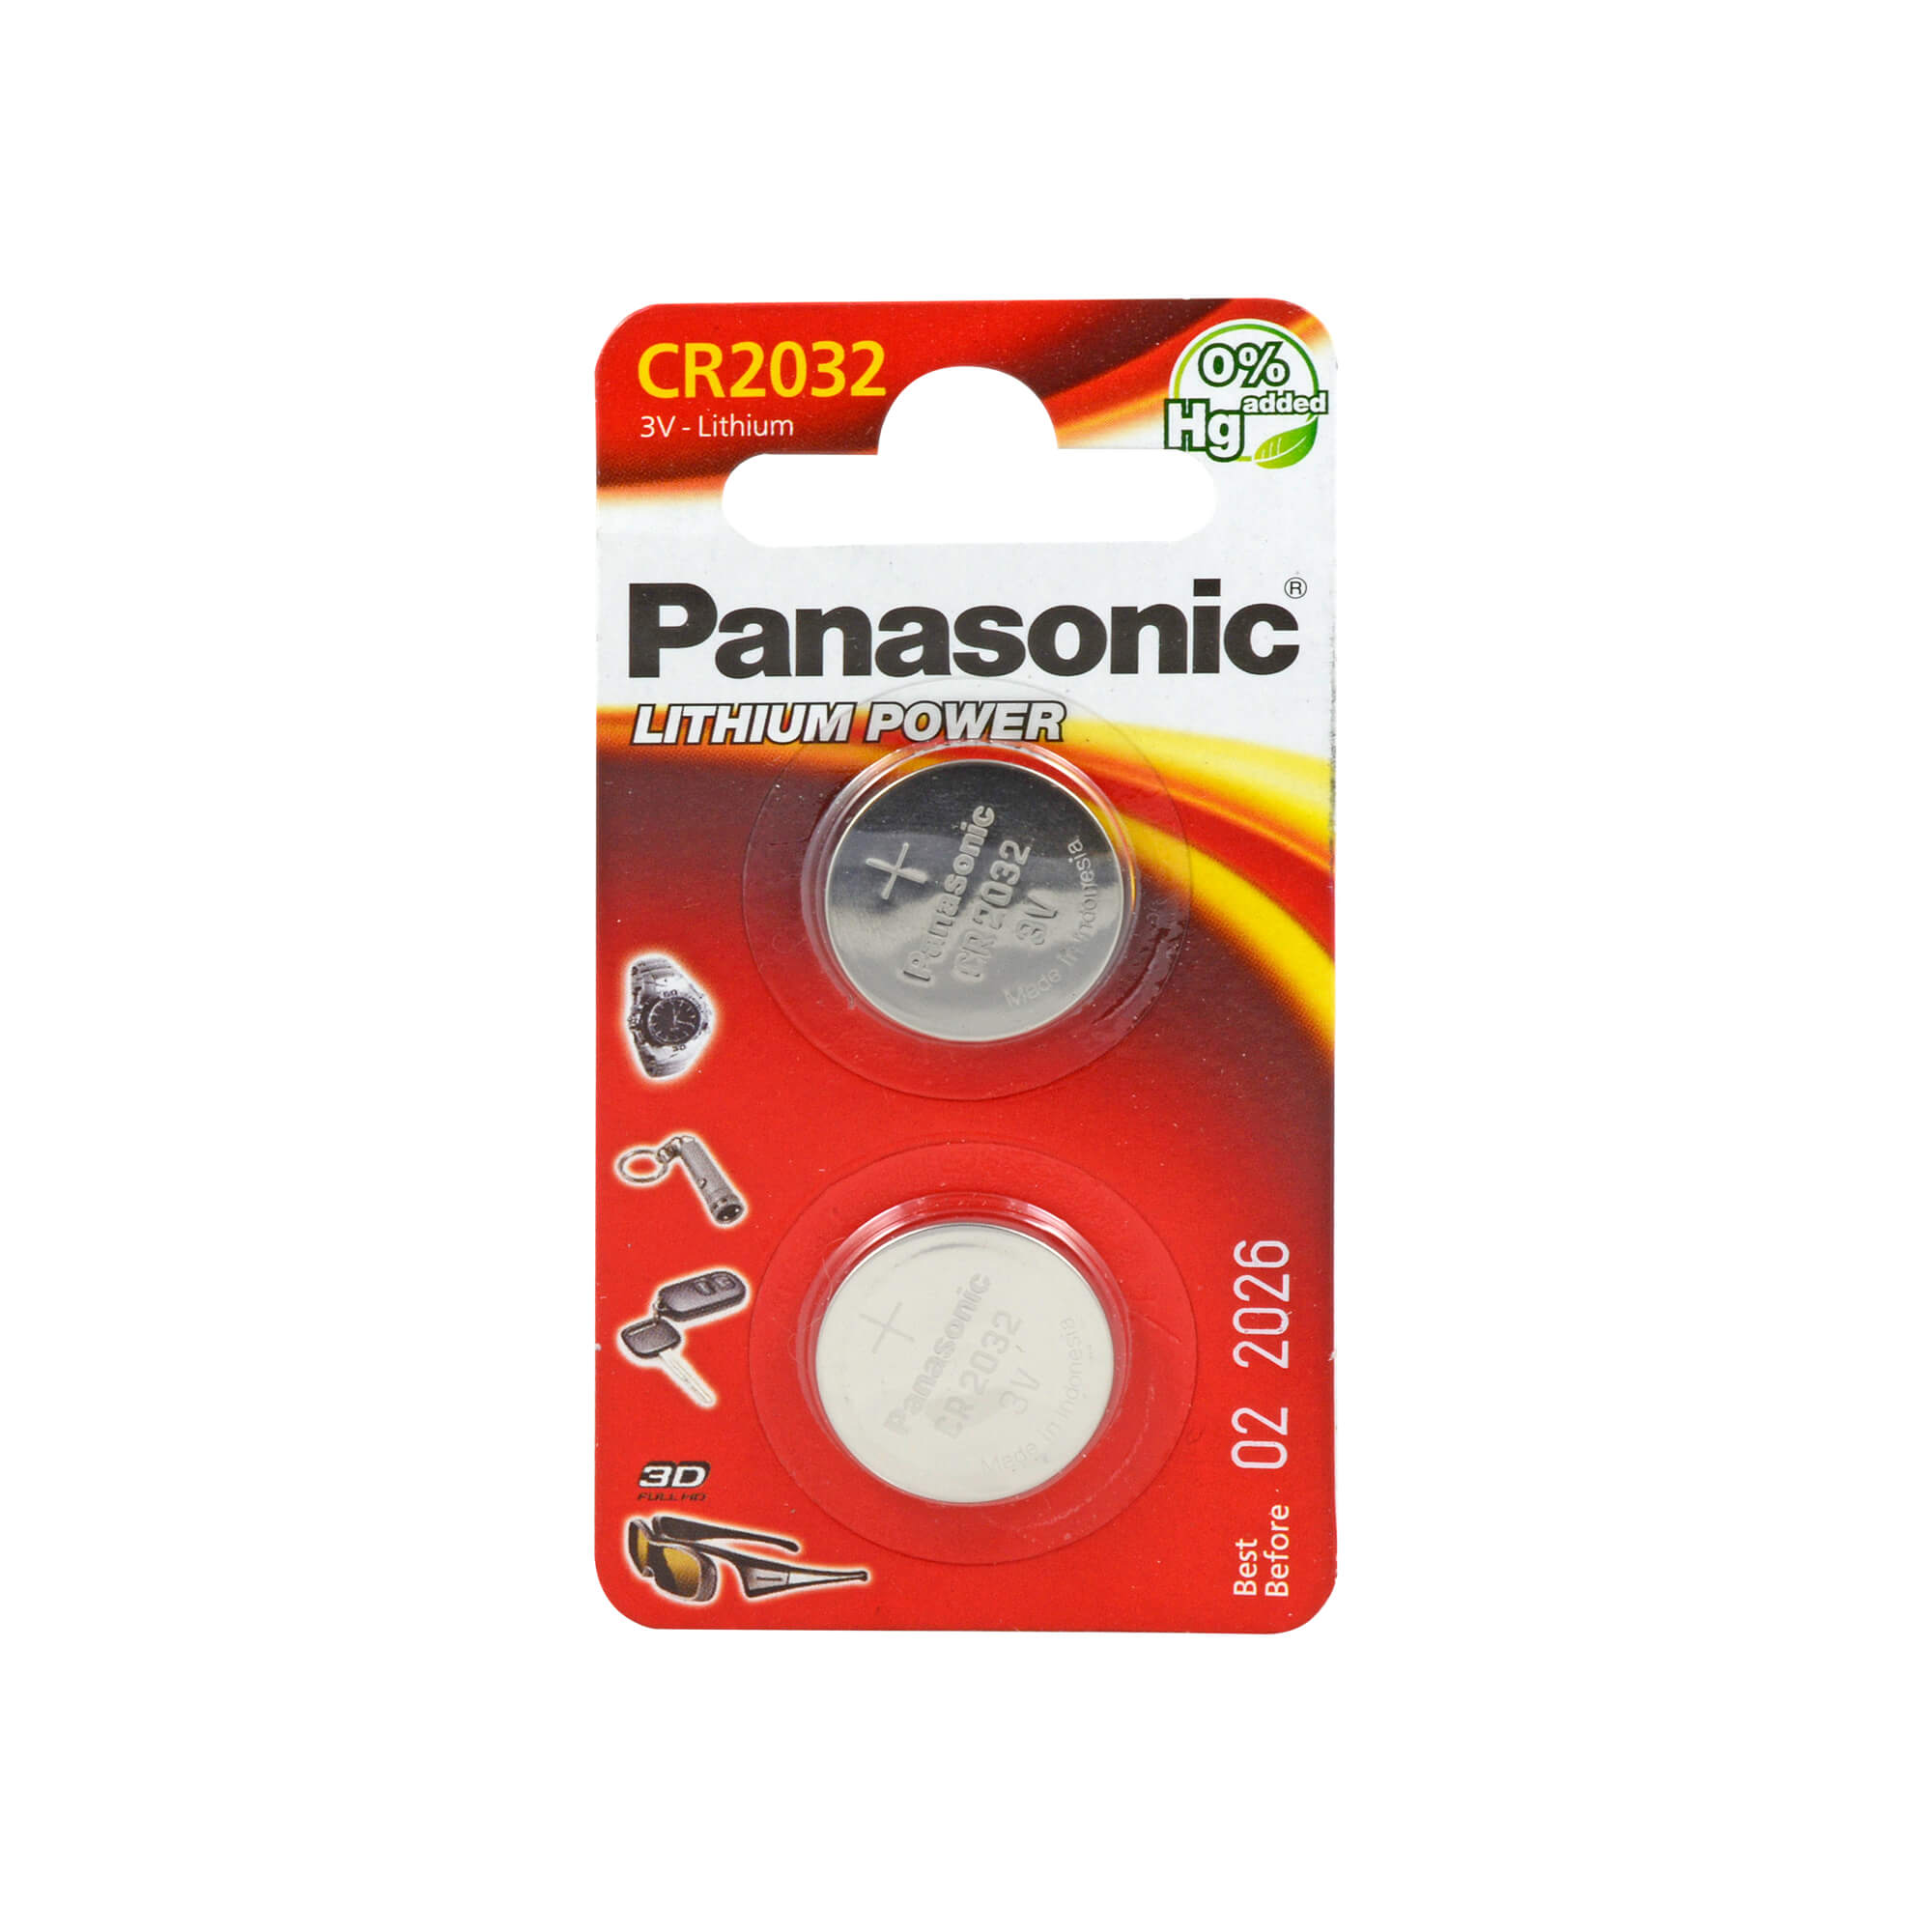 Panasonic Lithium Zelle 3V CR 2032.